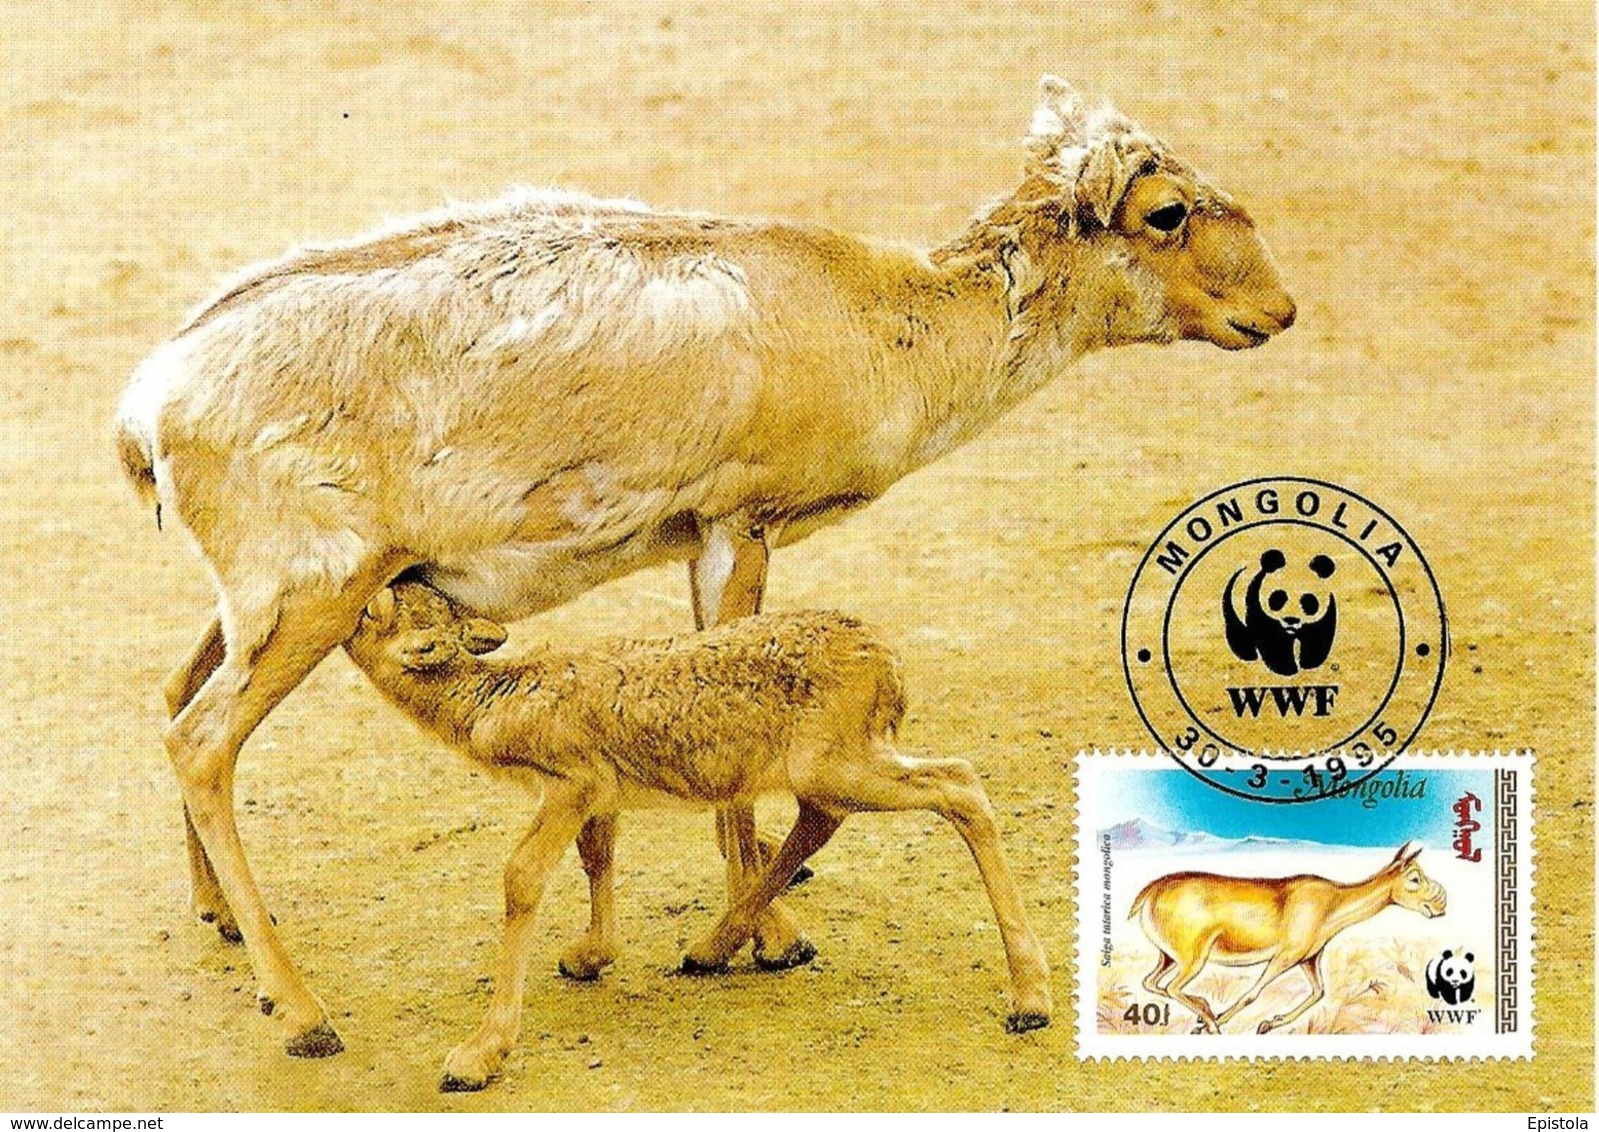 1995 - MONGOLIA - Saiga Tatarica -  Antilope Eurasiatique De Mongolie  WWF - Mongolie